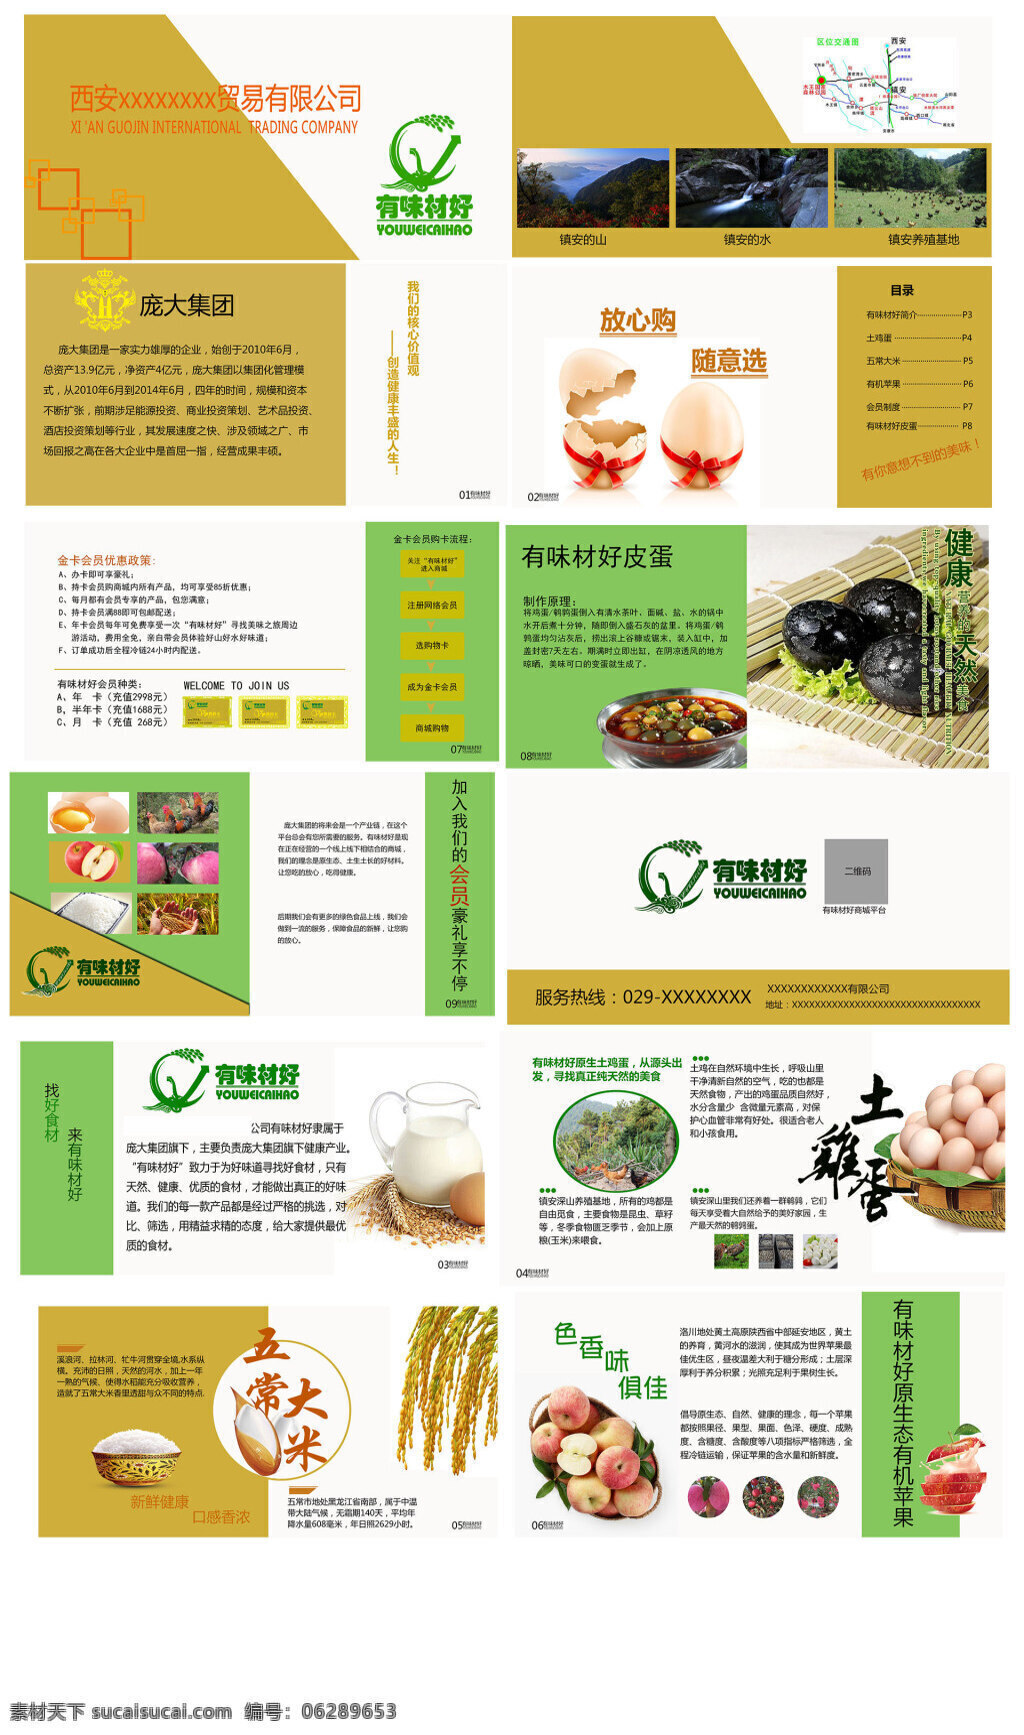 农产品画册 画册简单大方 淡 黄色 淡绿色 搭配 生动 显示 出 农产品 效果